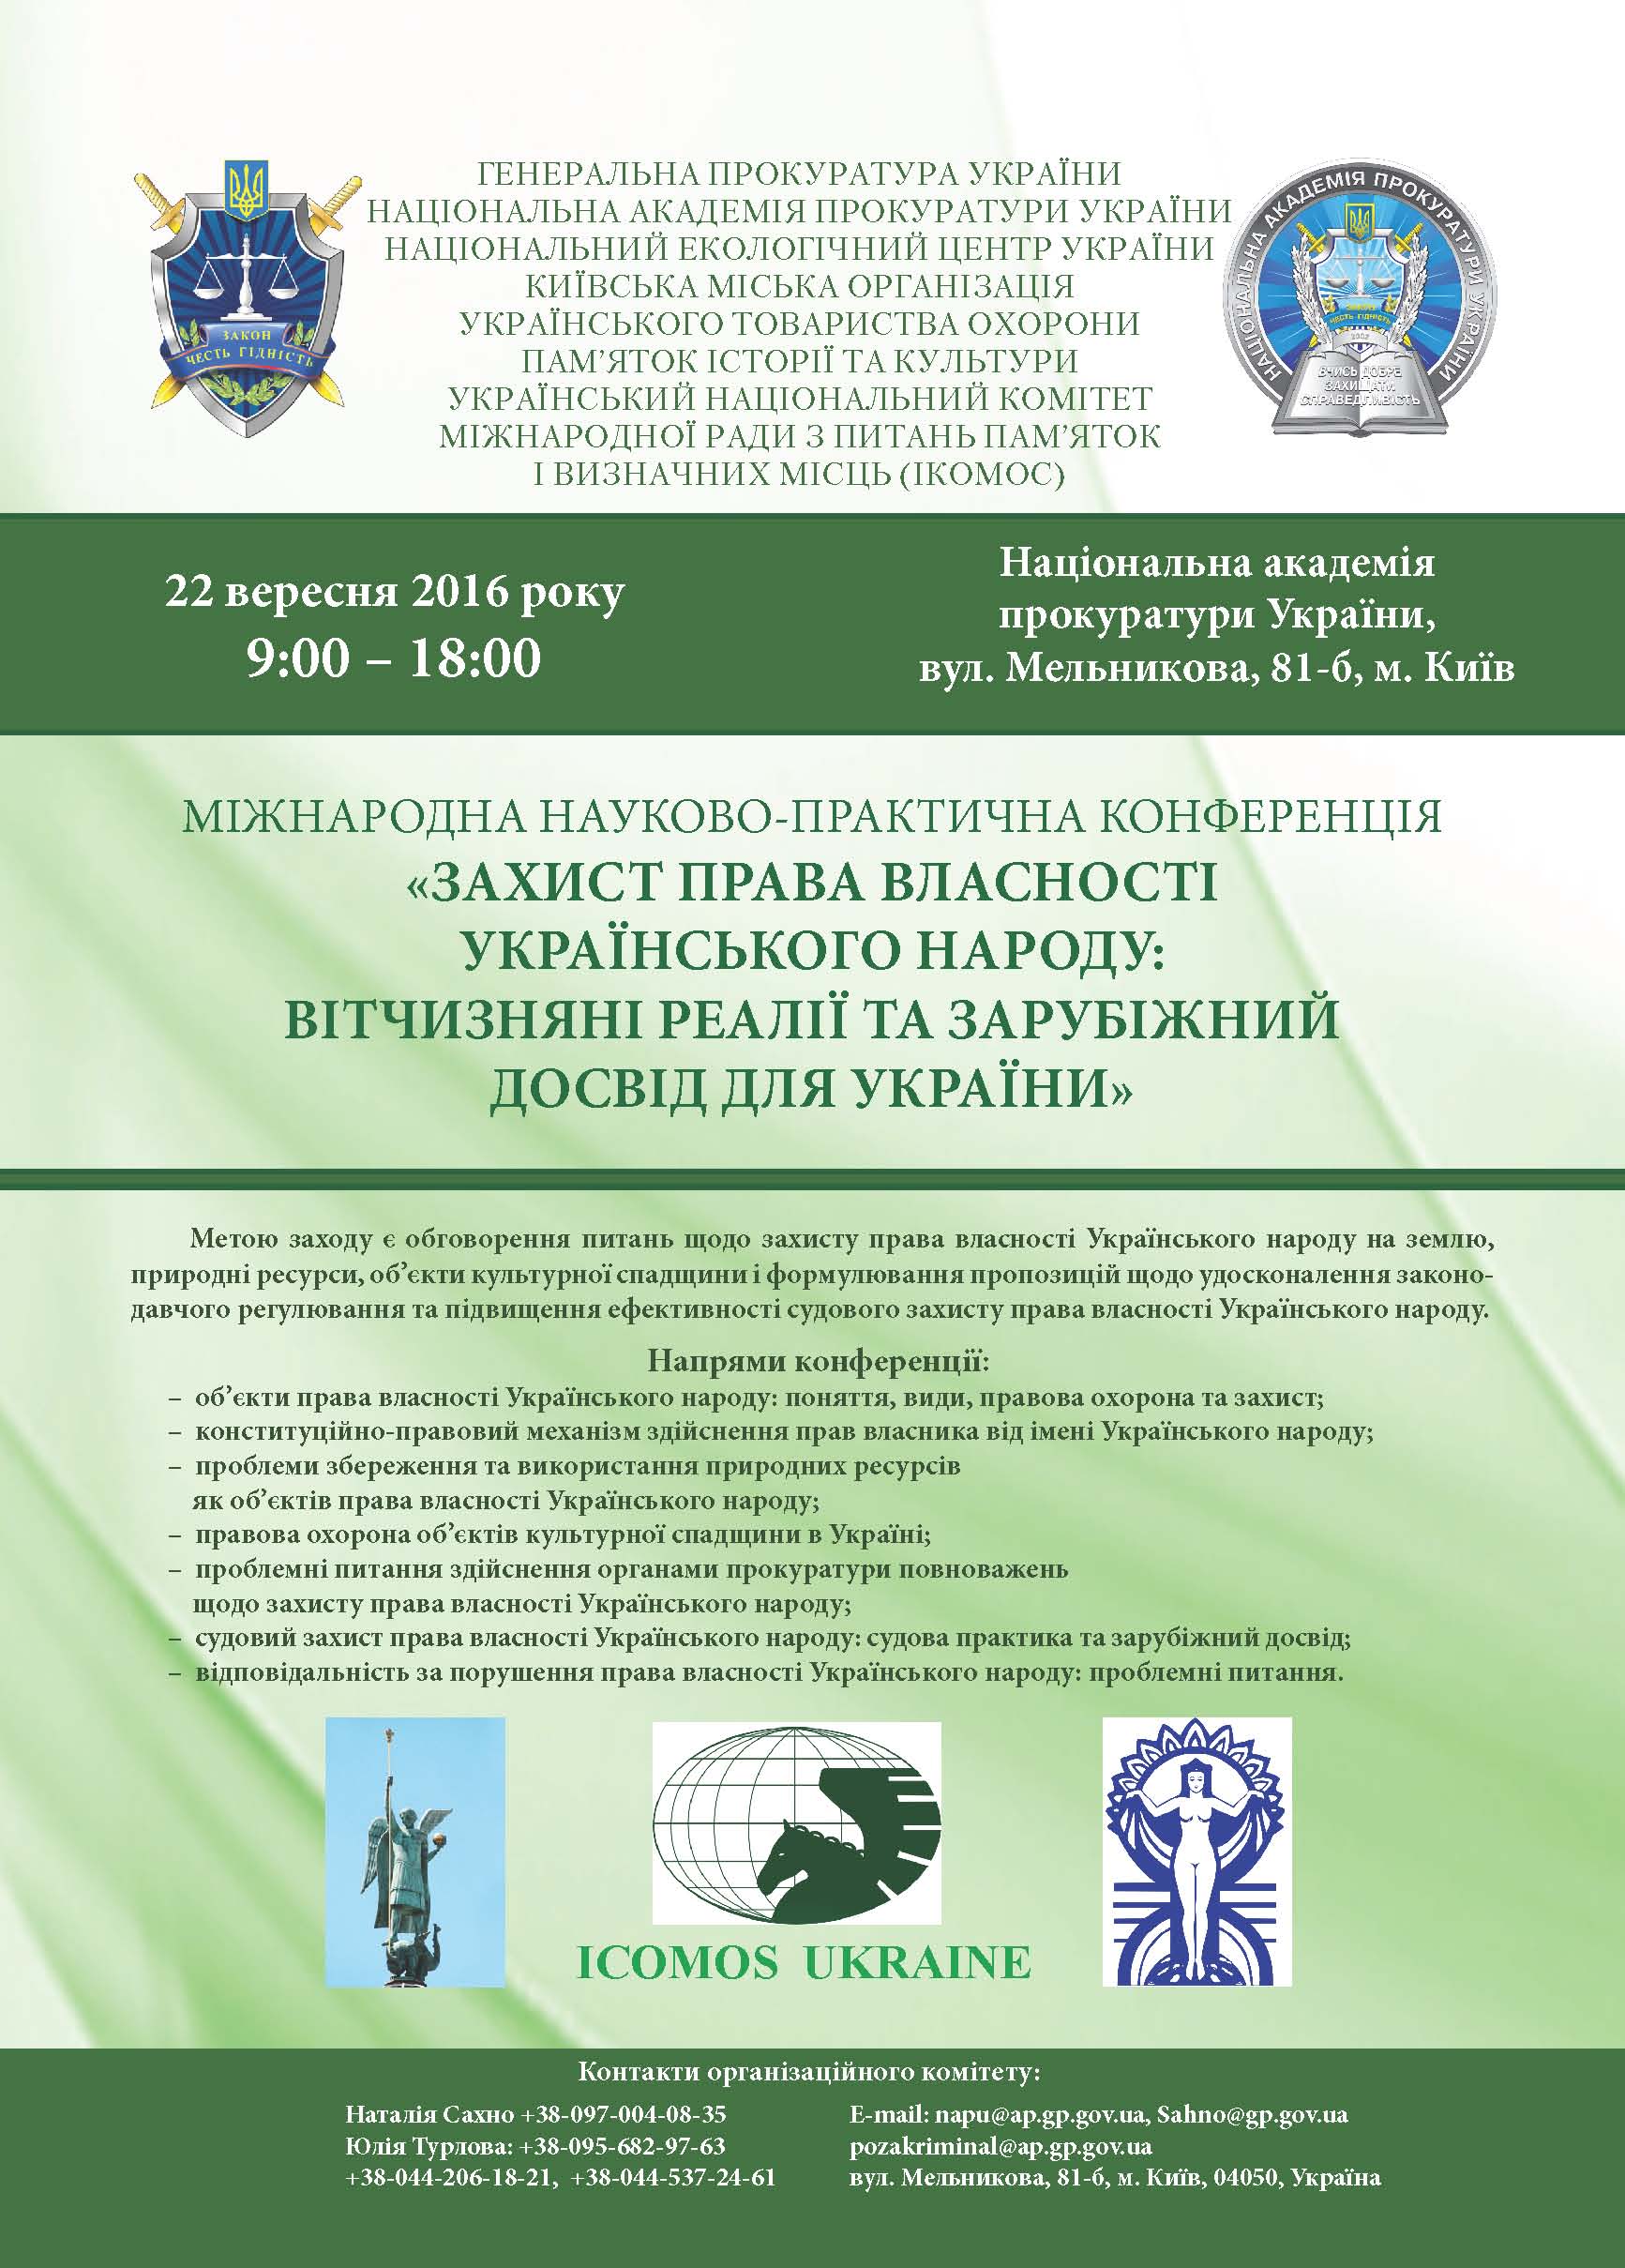 У Києві відбудеться міжнародна конференція "Захист права власності українського народу" - фото 1